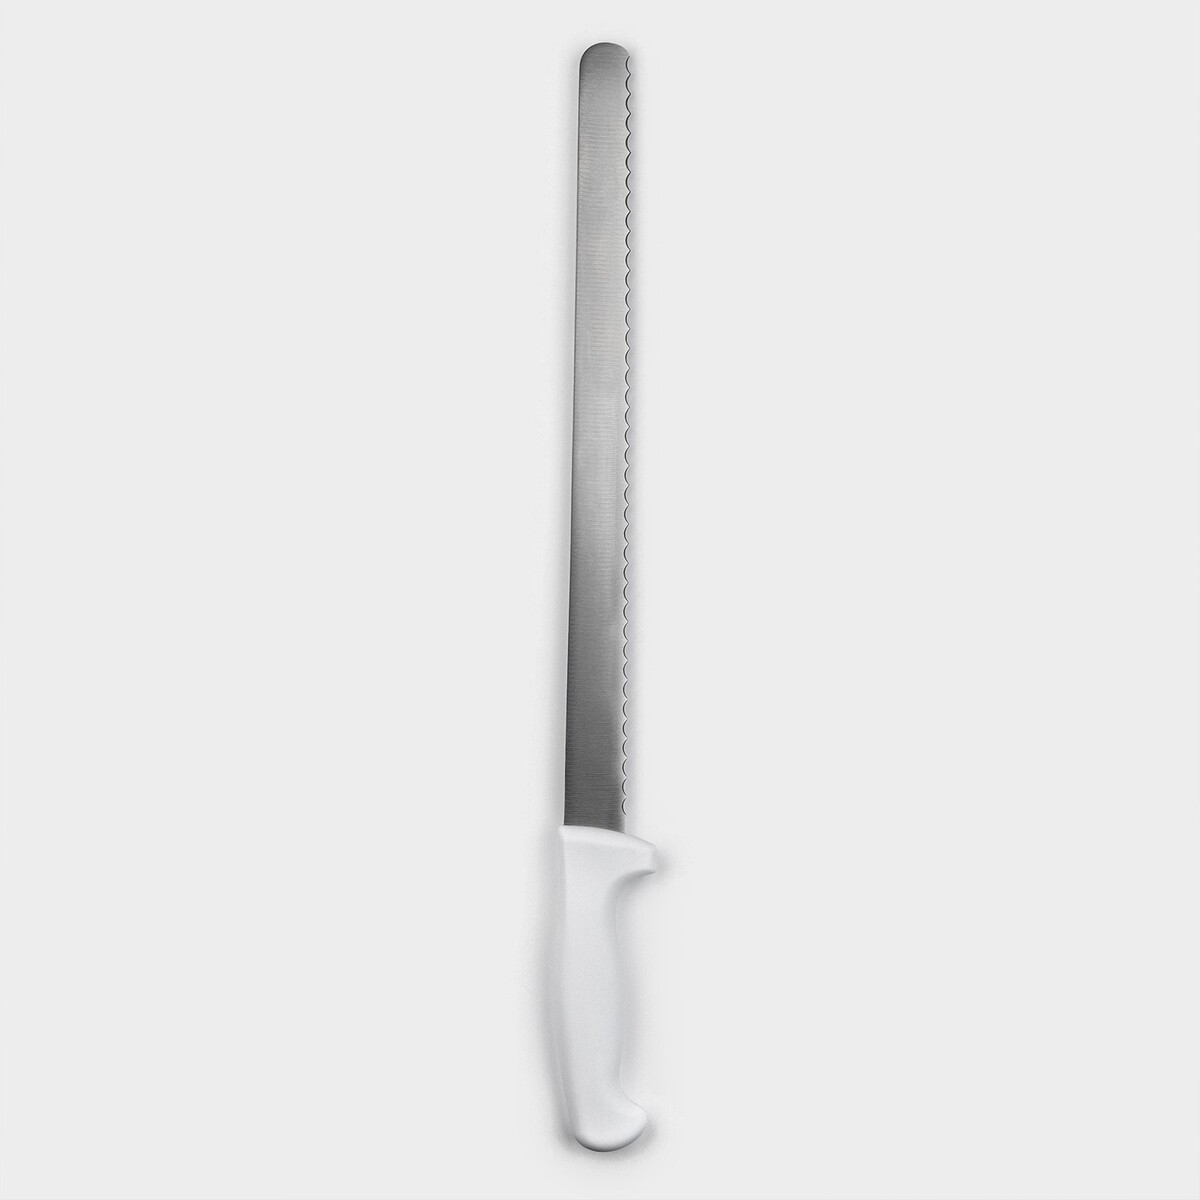 Нож для бисквита, рабочая поверхность 34 см, крупные зубчики нож для бисквита ровный край ручка дерево рабочая поверхность 25 см